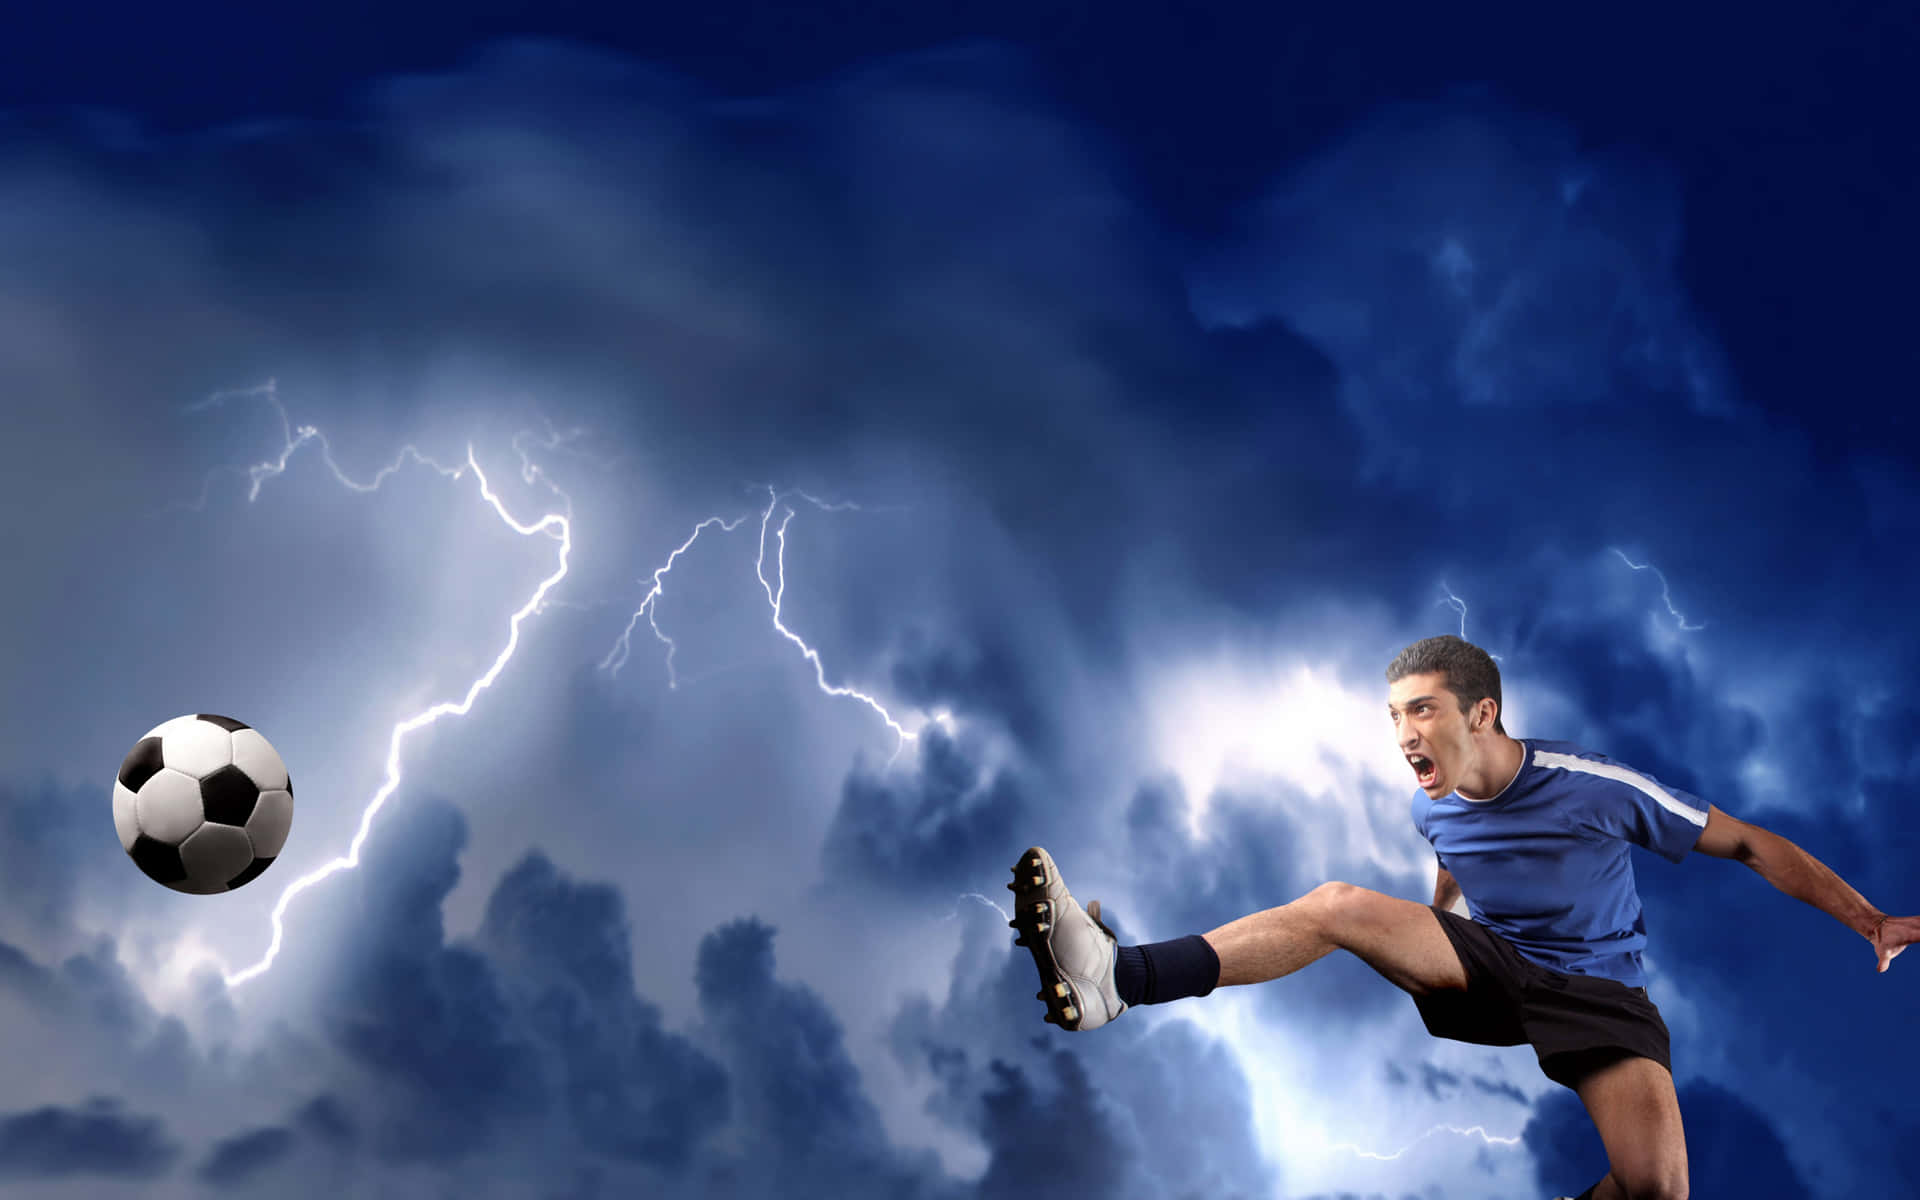 Fußballermit Hintergrundbild In Form Von Blitzen